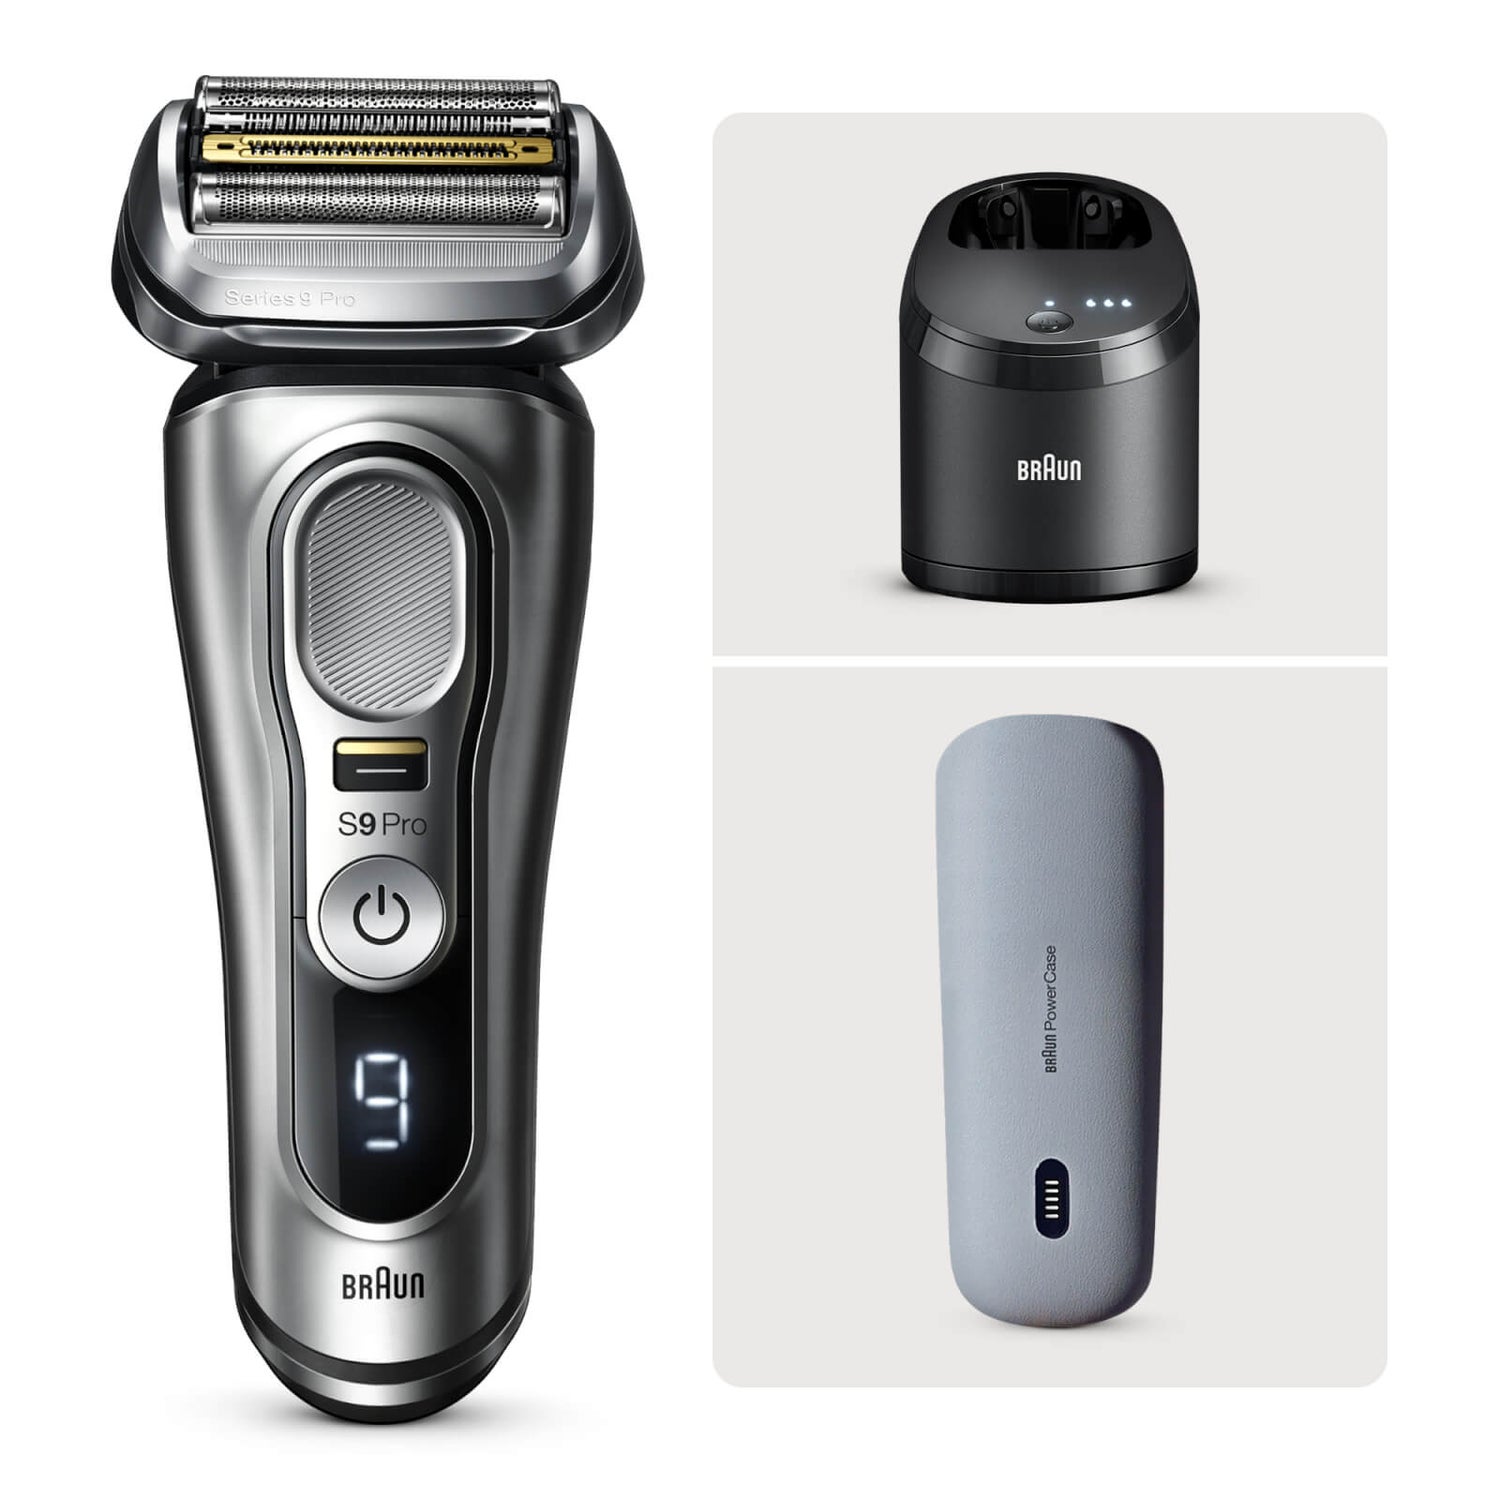 Braun Reinigungsspray für elektrische Rasierer Rasierapparate, Shaver  Cleaner